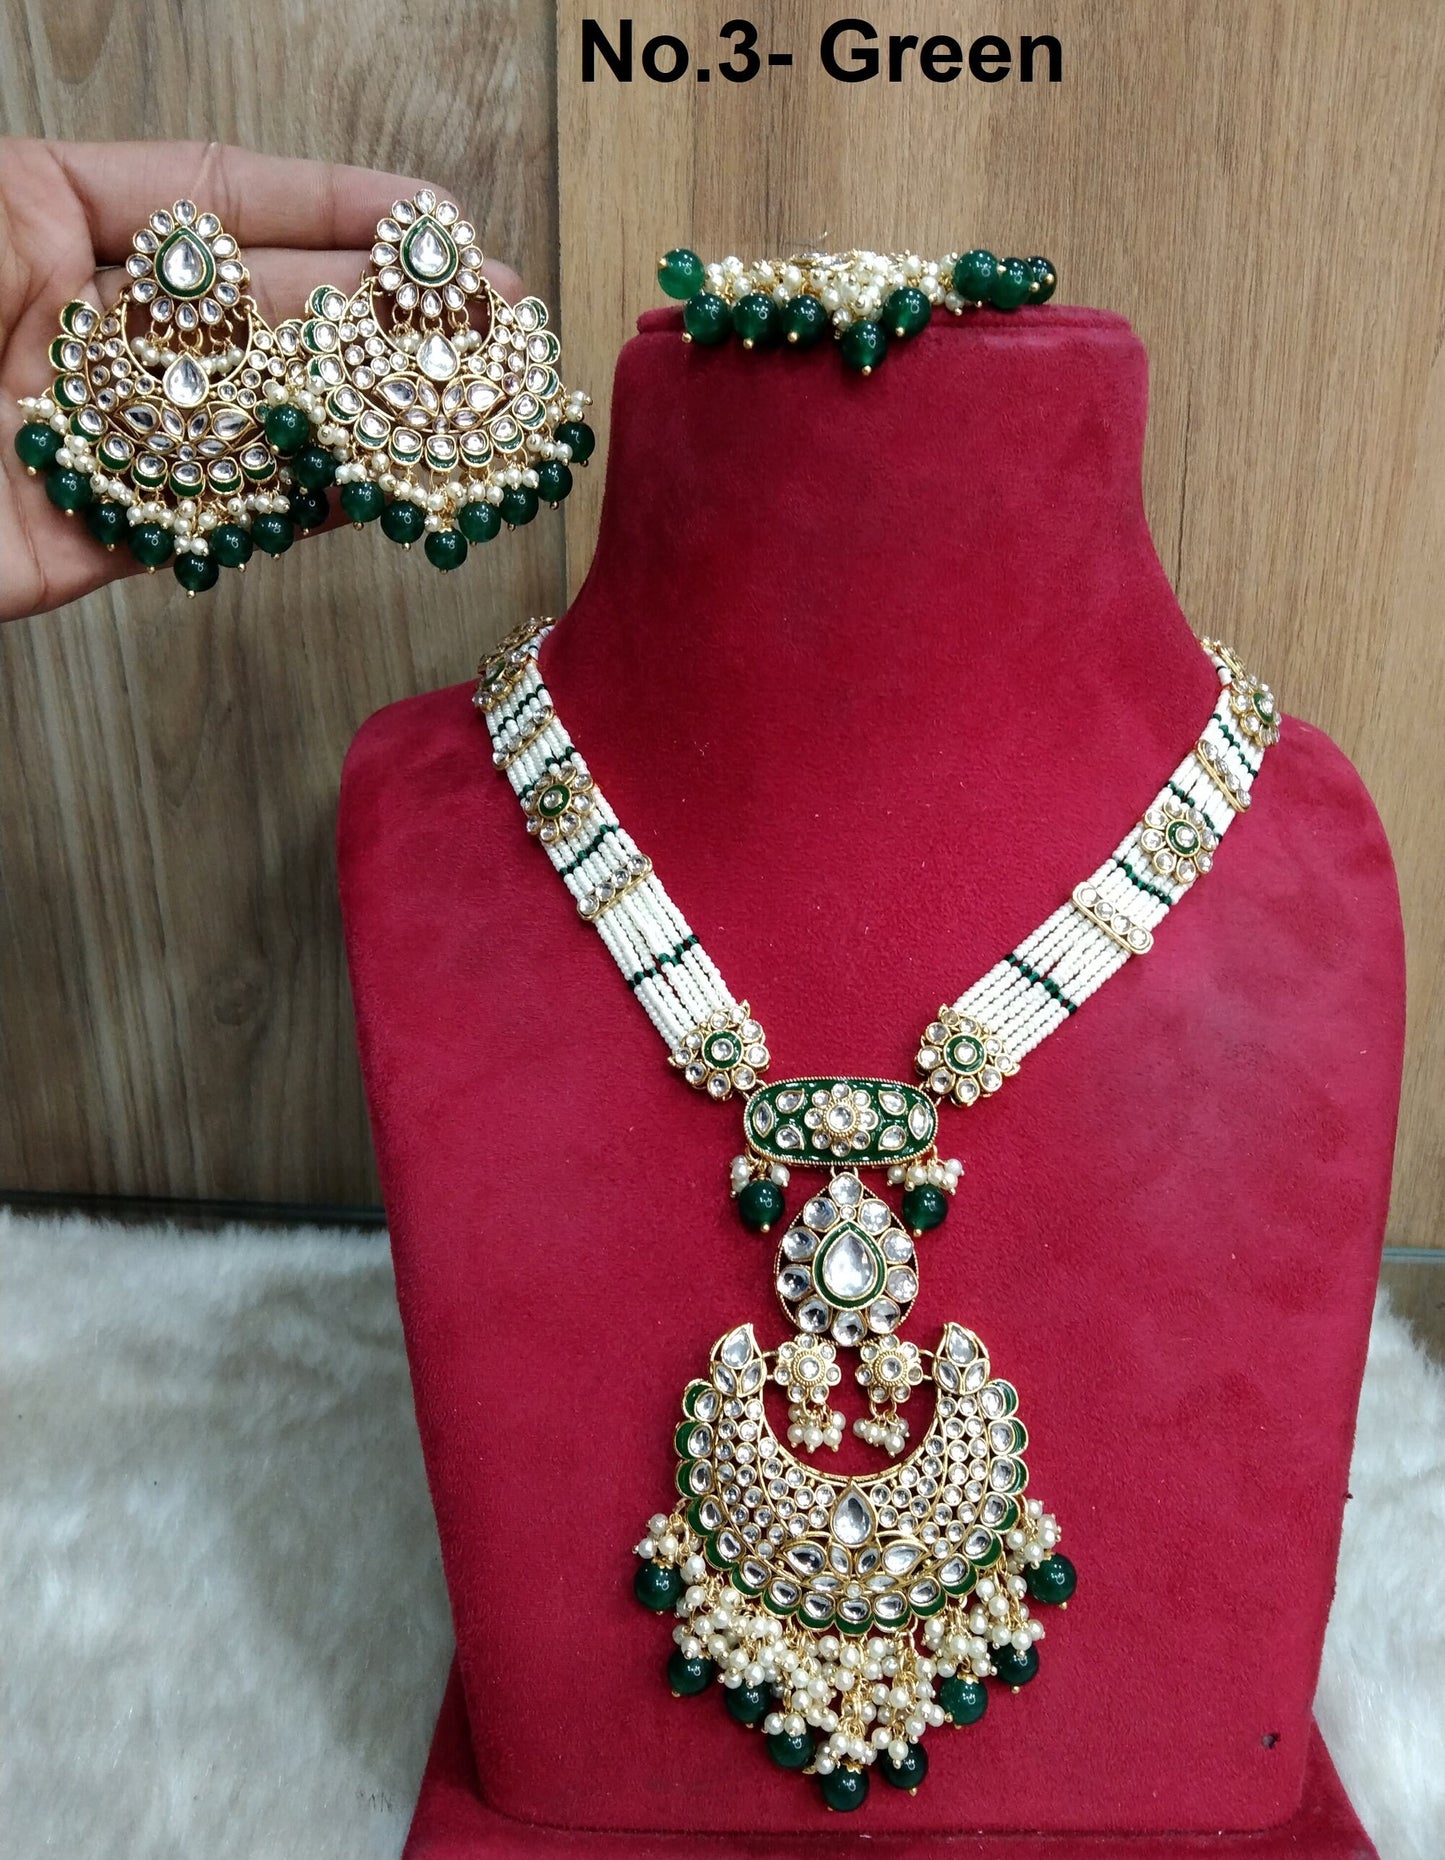 Rani Haar Kundan lange Halskette Set/Gold weiß, Kastanienbraun, Grün, Blau Indische Halskette Set/Indischer Kundan Hobart Schmuck/Muslimische lange Halskette Set